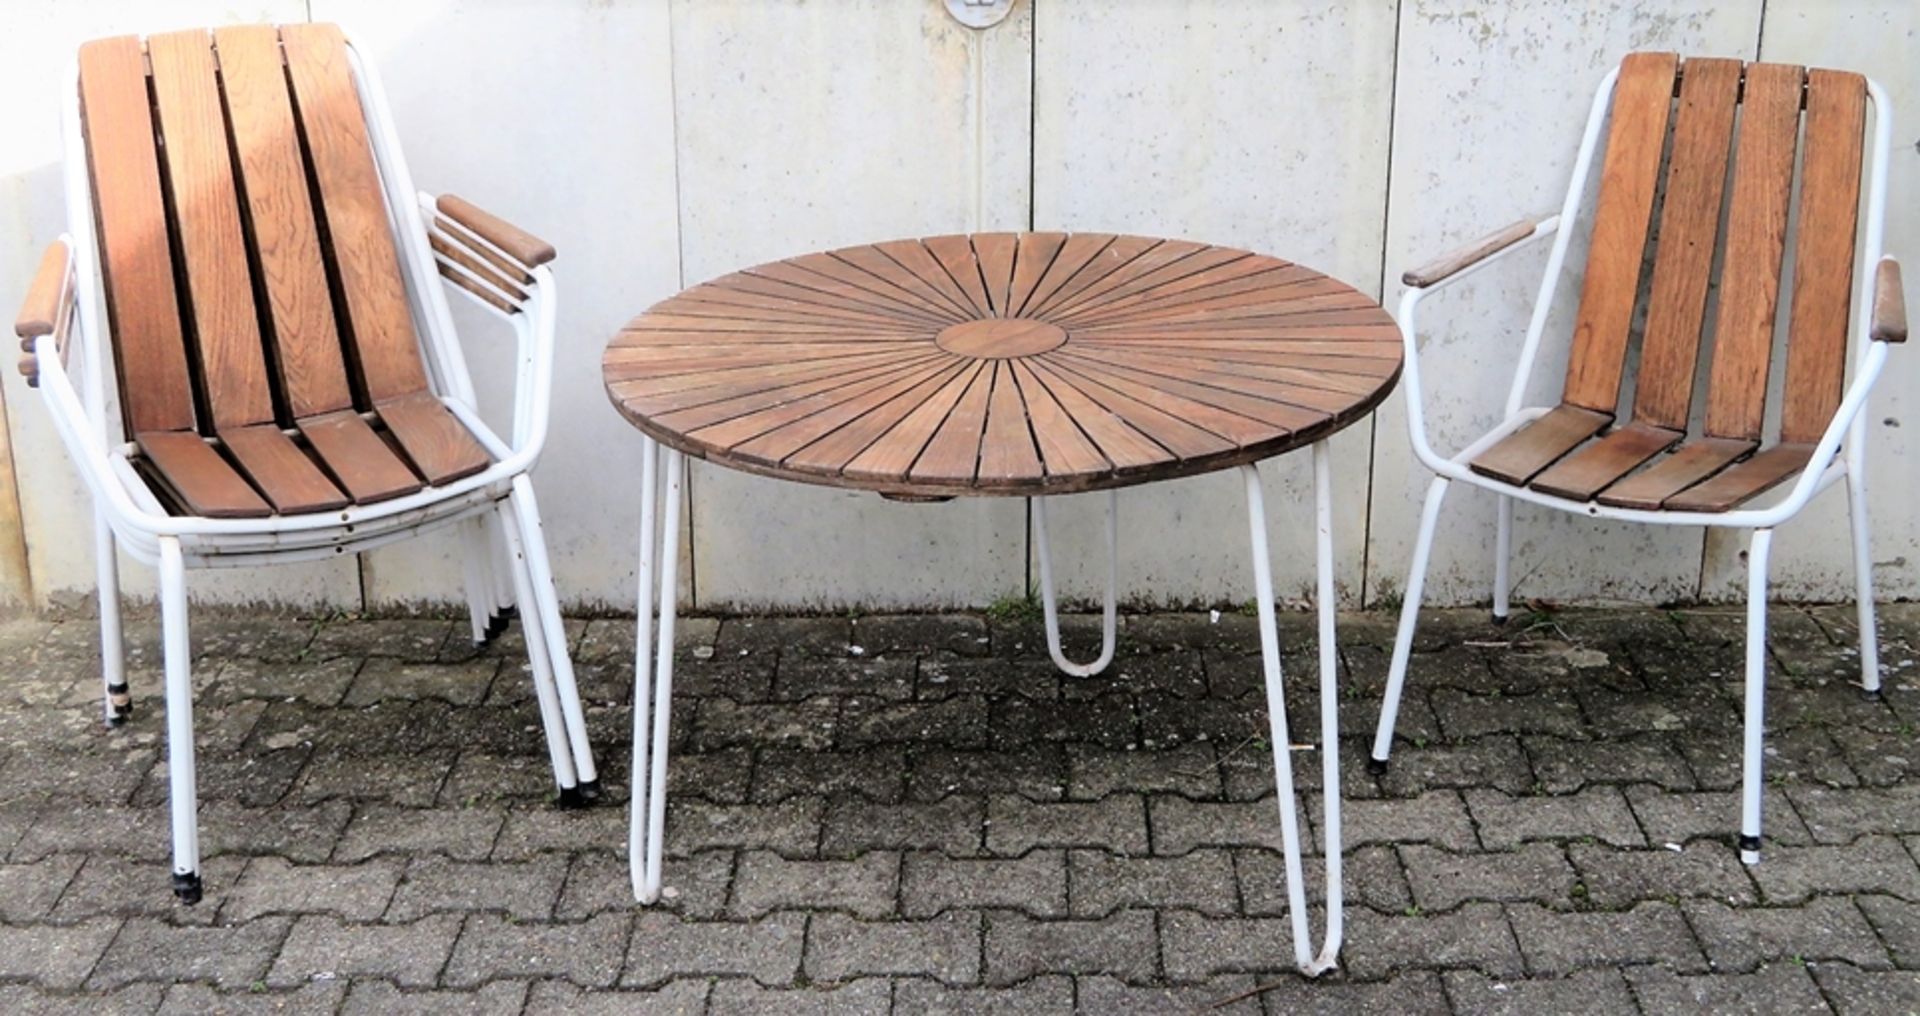 6 teilige Gartengarnitur, Tisch mit 5 Stühlen, 1950/60er Jahre, Holz und Metall Weiß gelackt, alter